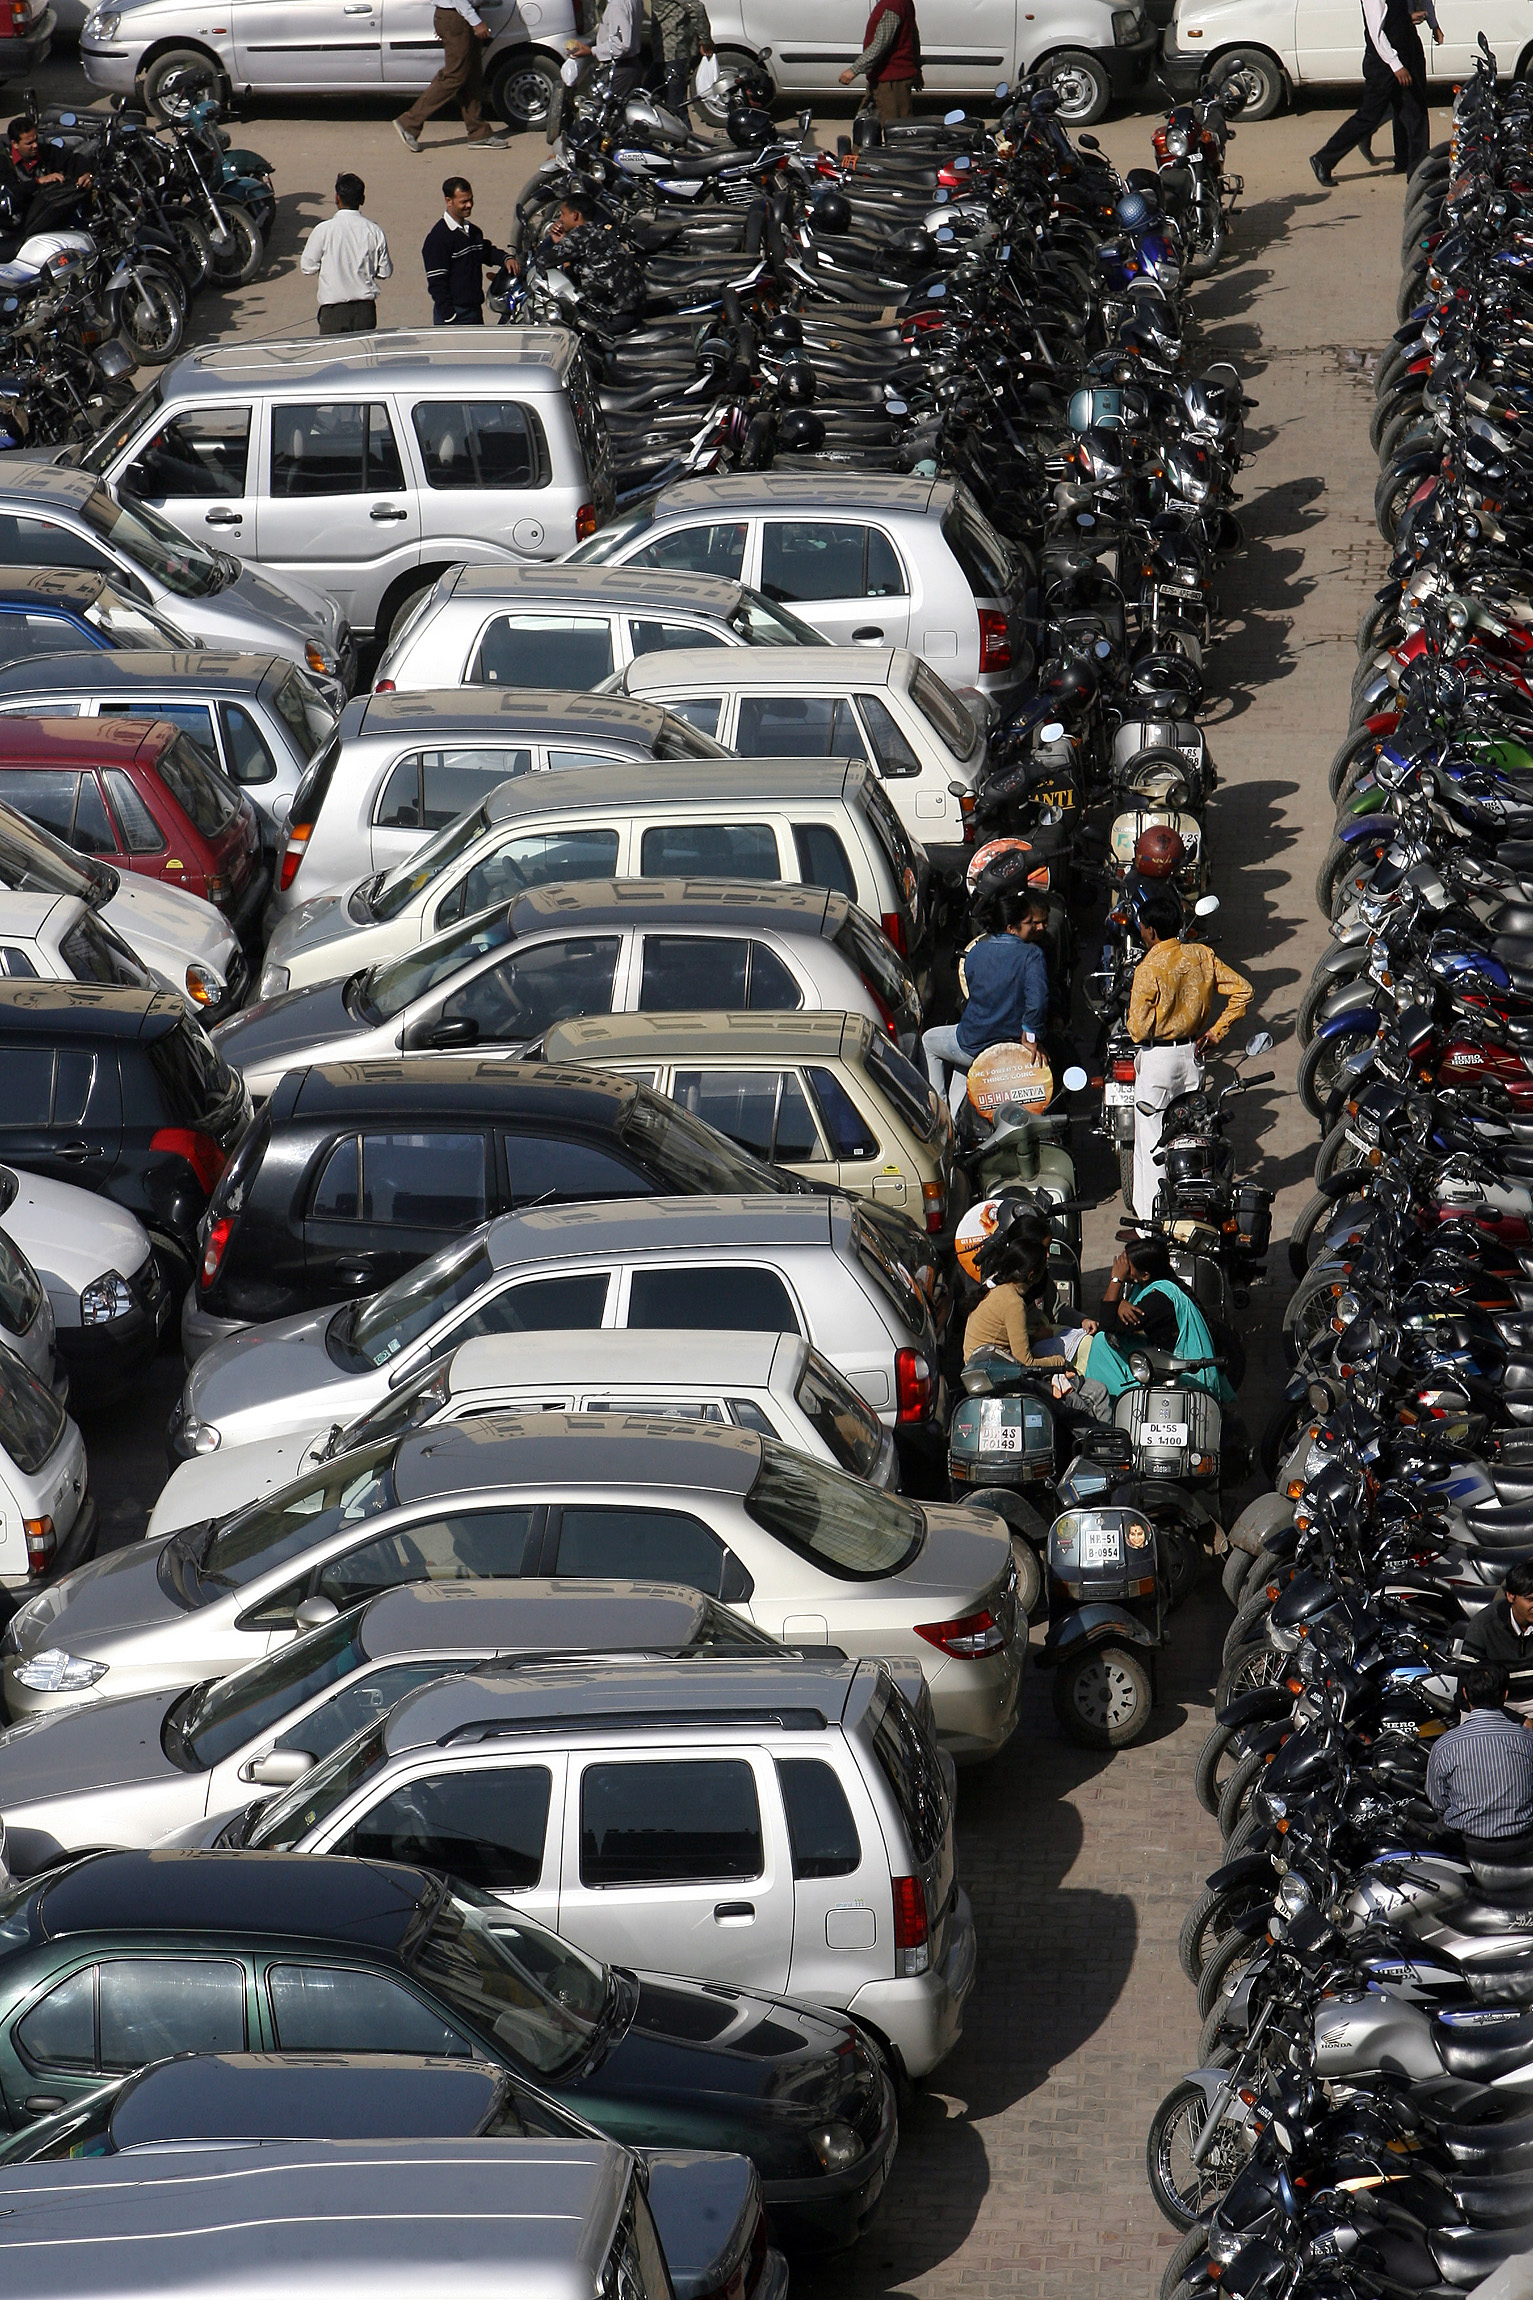 Delhi’s mega parking crisis